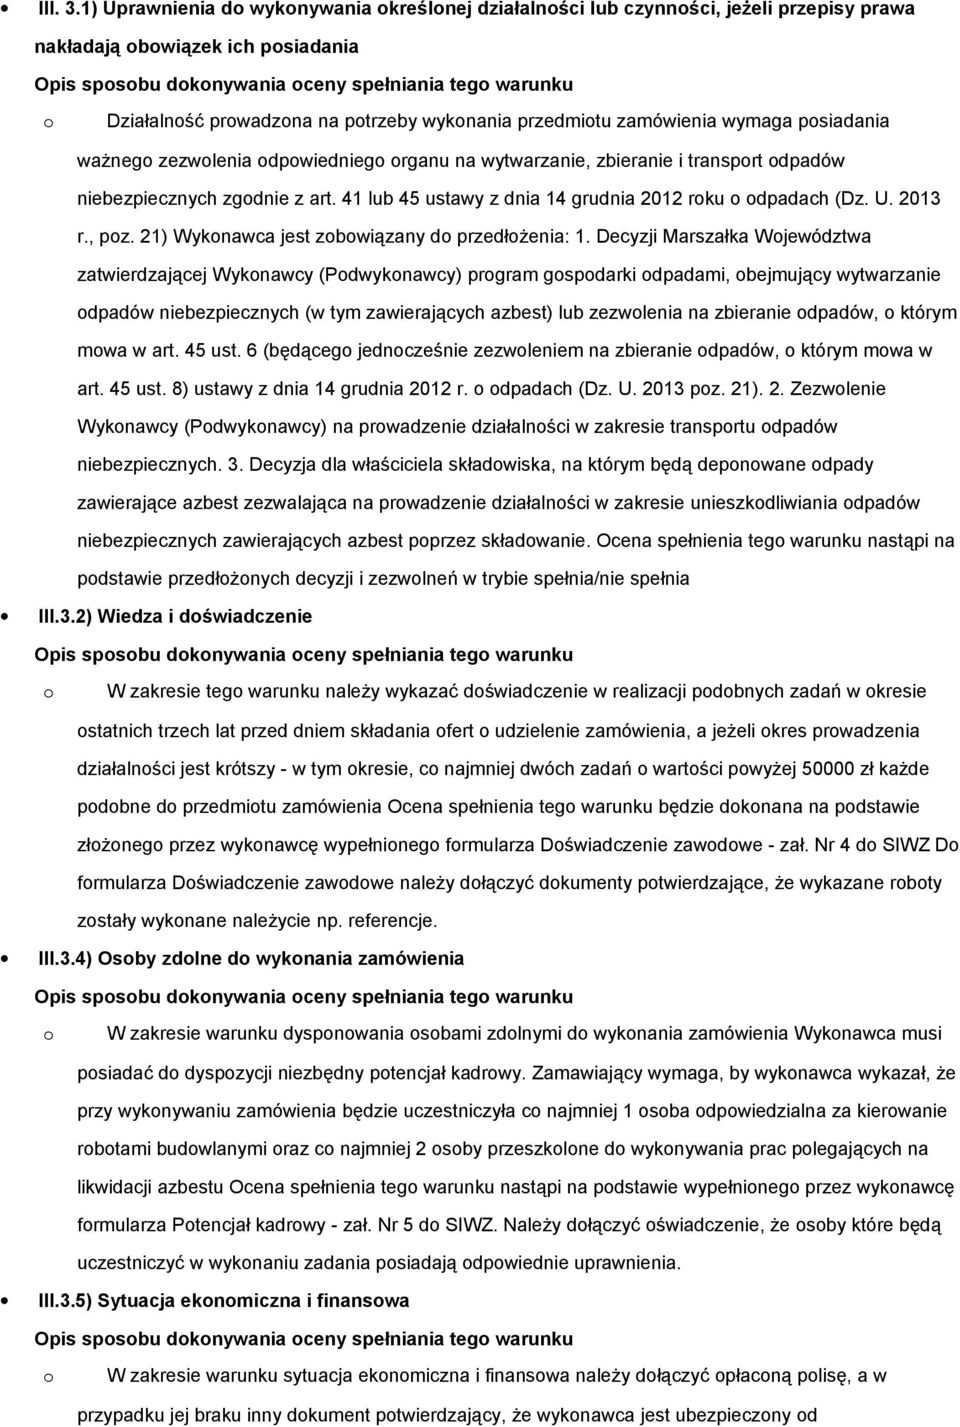 ważneg zezwlenia dpwiednieg rganu na wytwarzanie, zbieranie i transprt dpadów niebezpiecznych zgdnie z art. 41 lub 45 ustawy z dnia 14 grudnia 2012 rku dpadach (Dz. U. 2013 r., pz.